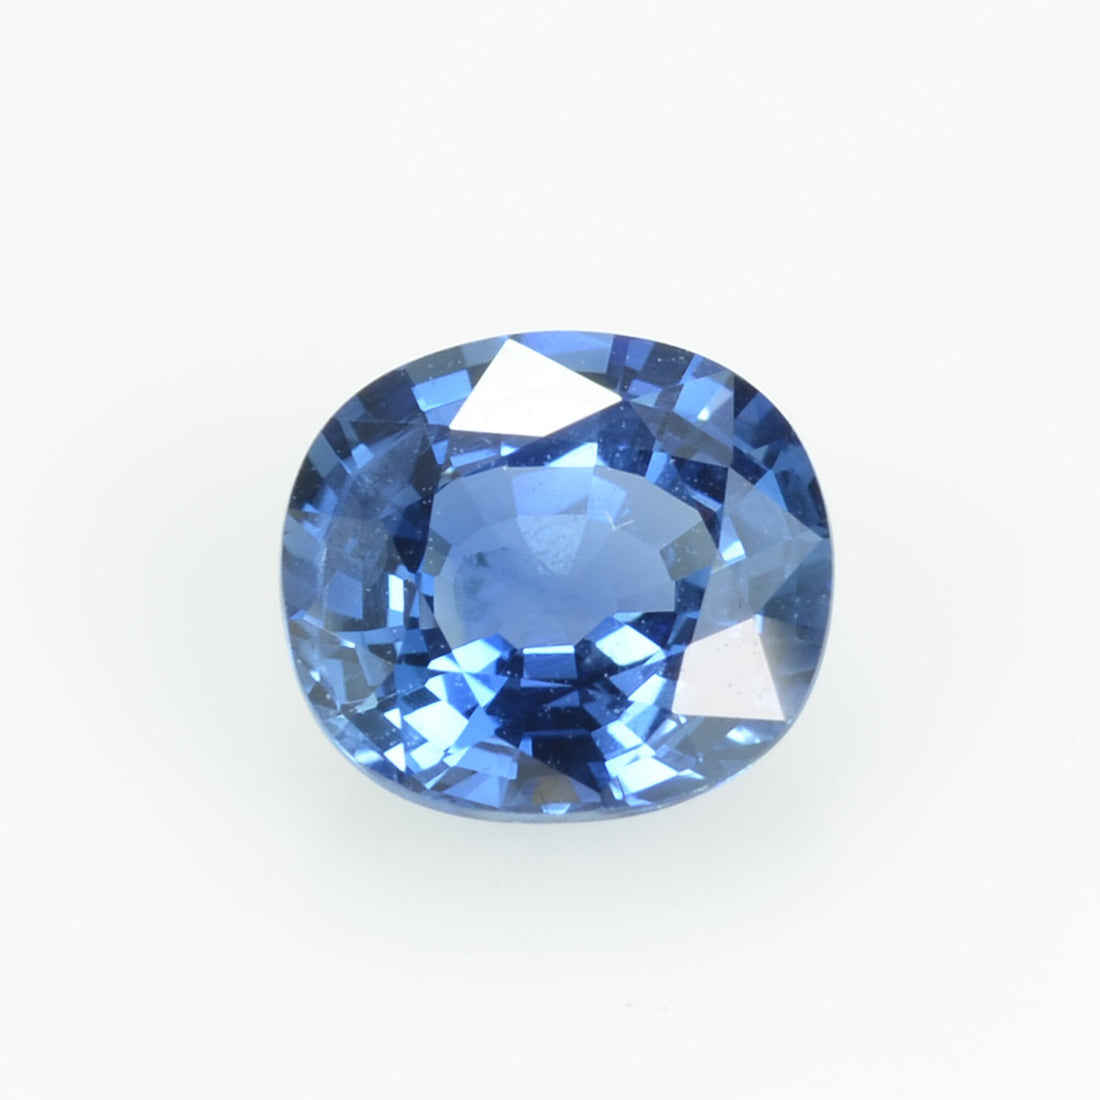 1.67 cts natural blue sapphire loose gemstone Cushion cut